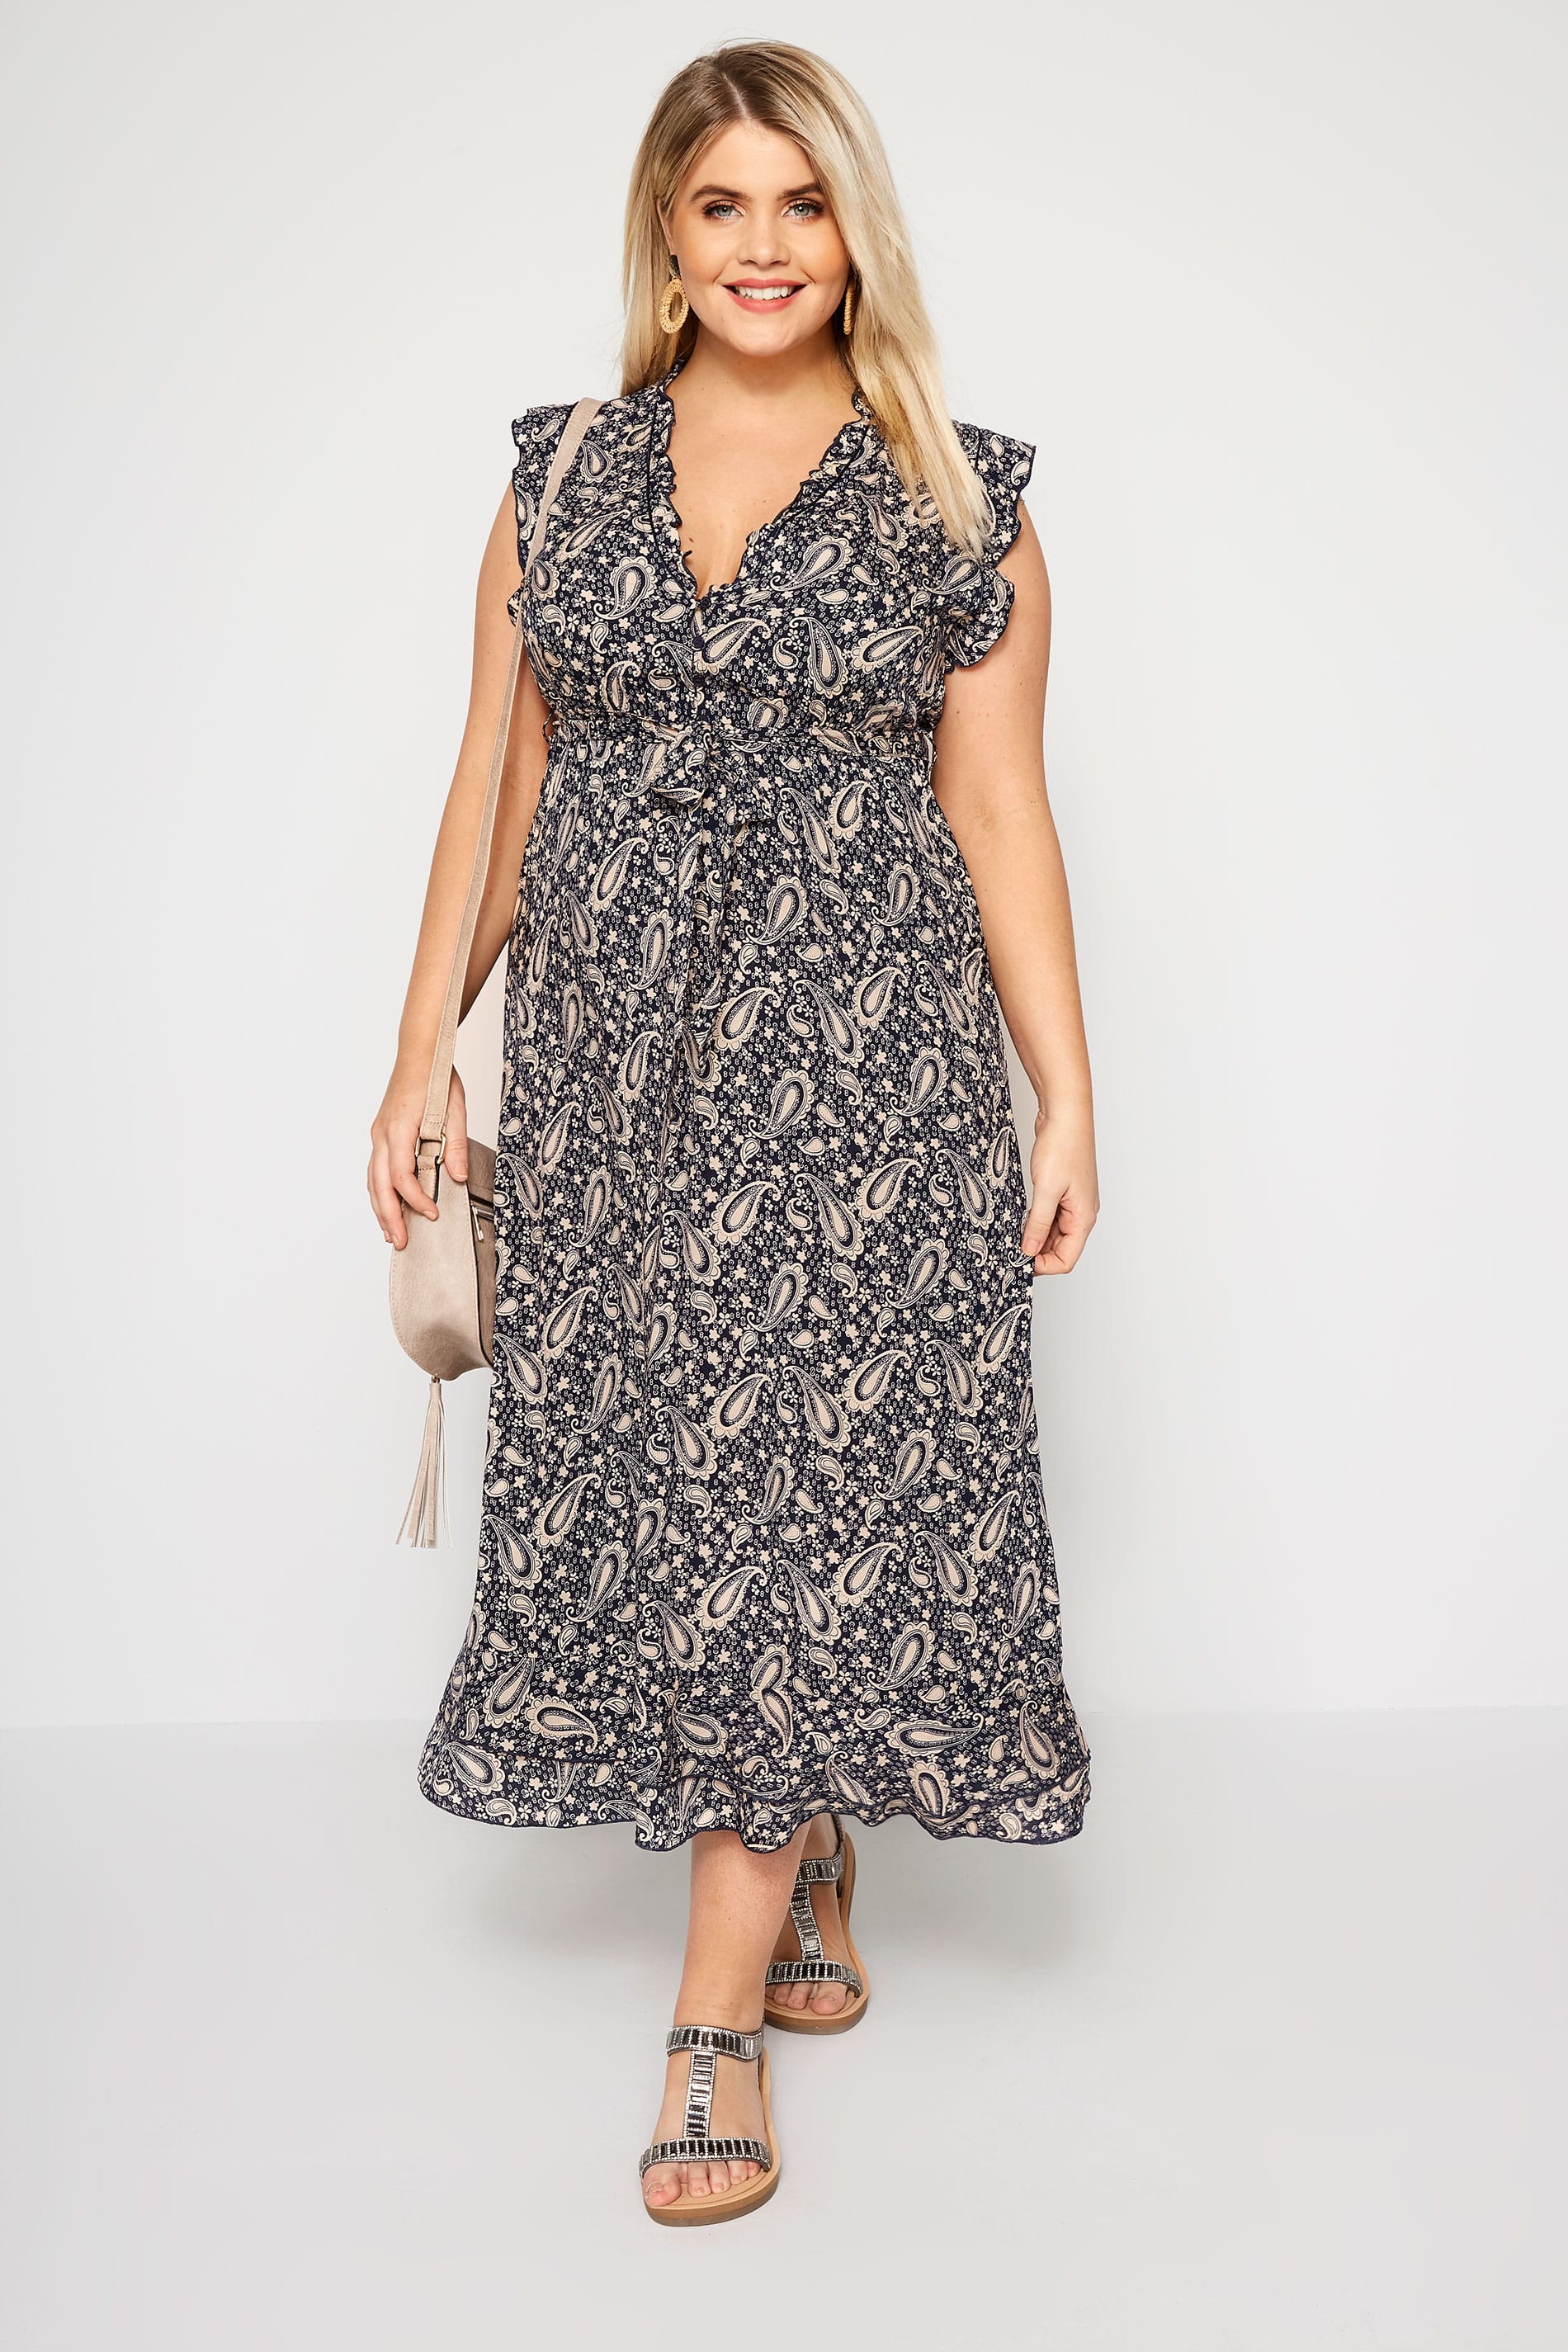 IZABEL CURVE Navy Paisley Maxi Dress | Plus Sizes 16 to 26 | Yours Clothing